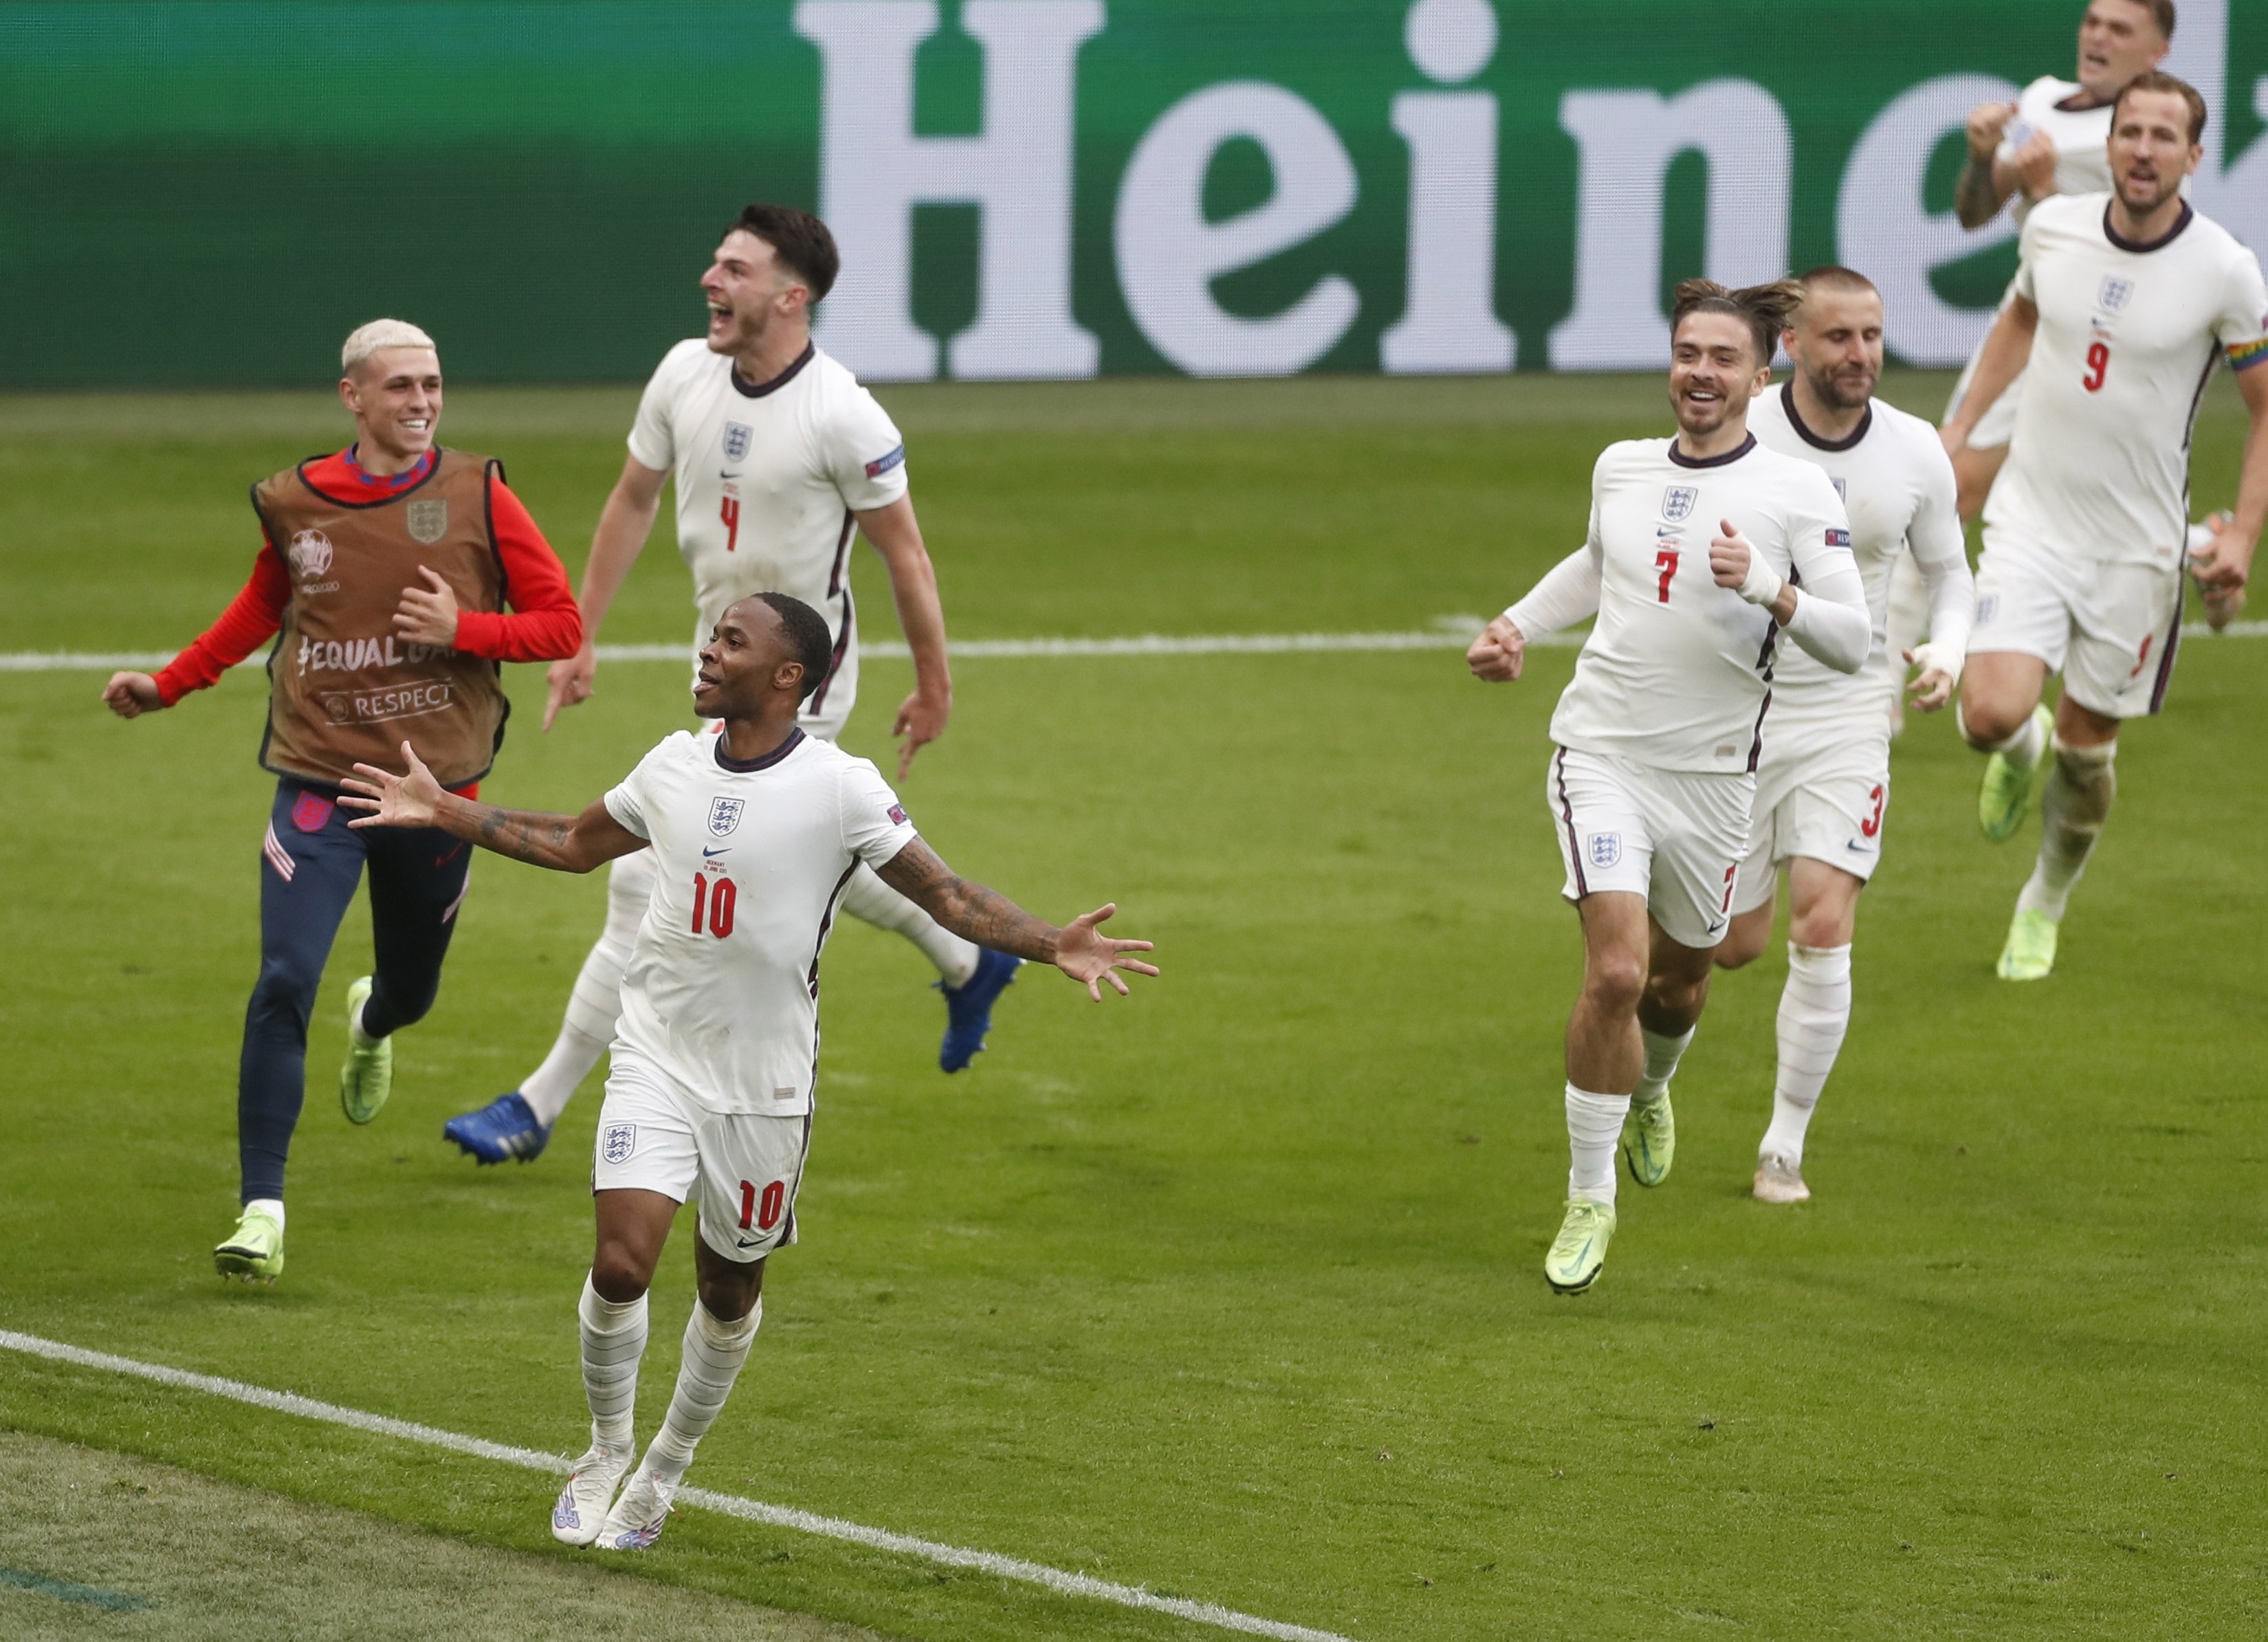 Anglaterra sentencia en el tram final i elimina una Alemanya molt pobra (2-0)